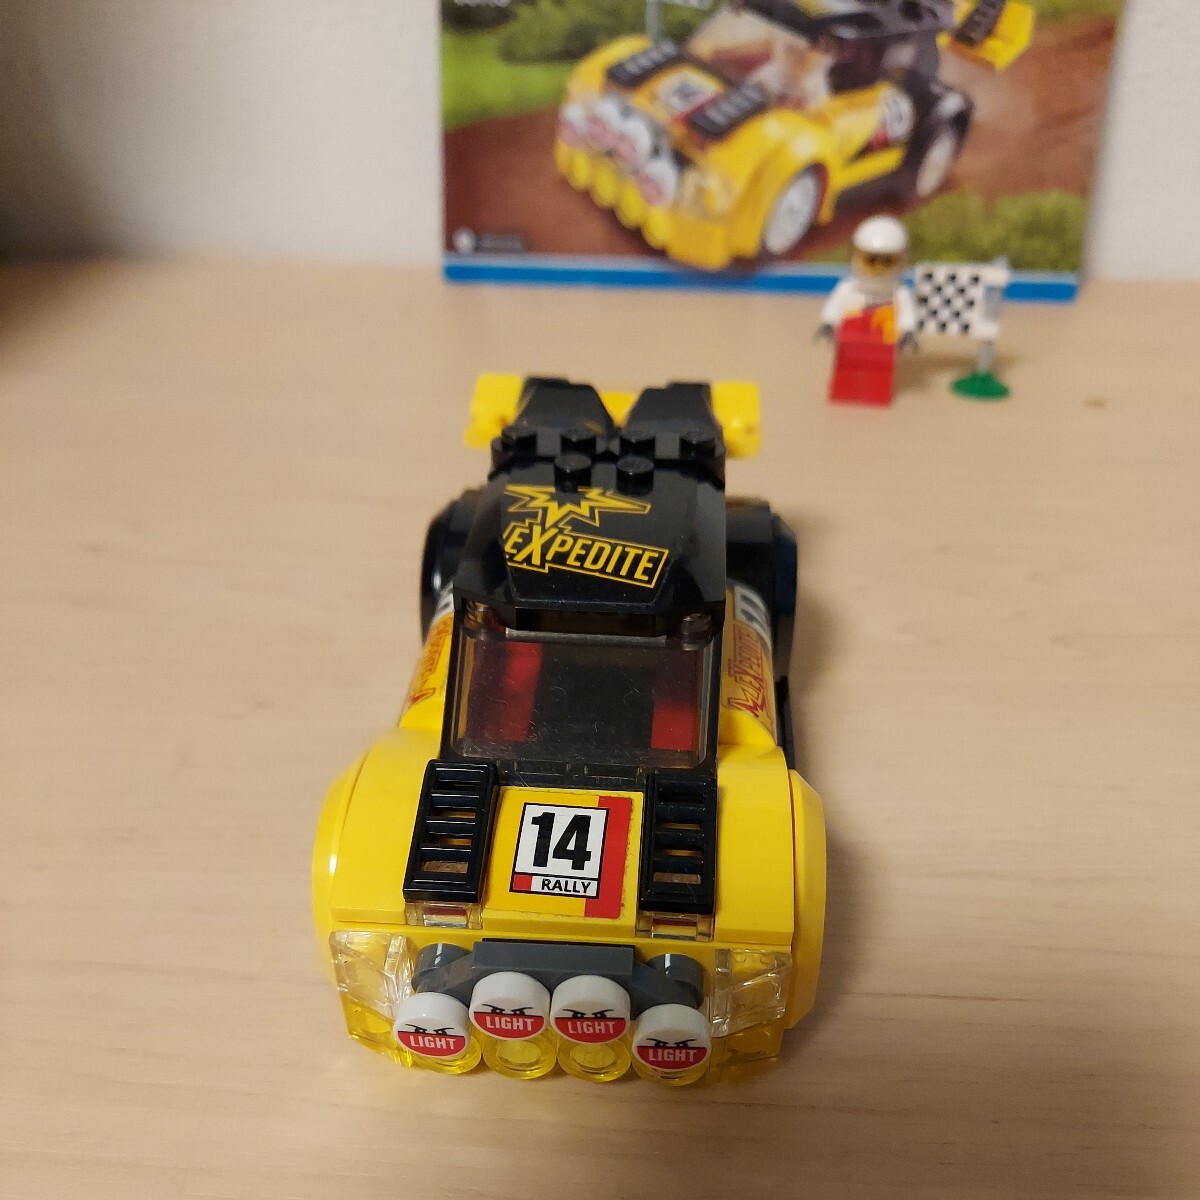 LEGO レゴ シティ CITY 絶版 60113 ラリーカー レーシングカー ラリー スポーツカー 廃盤 昔のレゴ 車_画像5